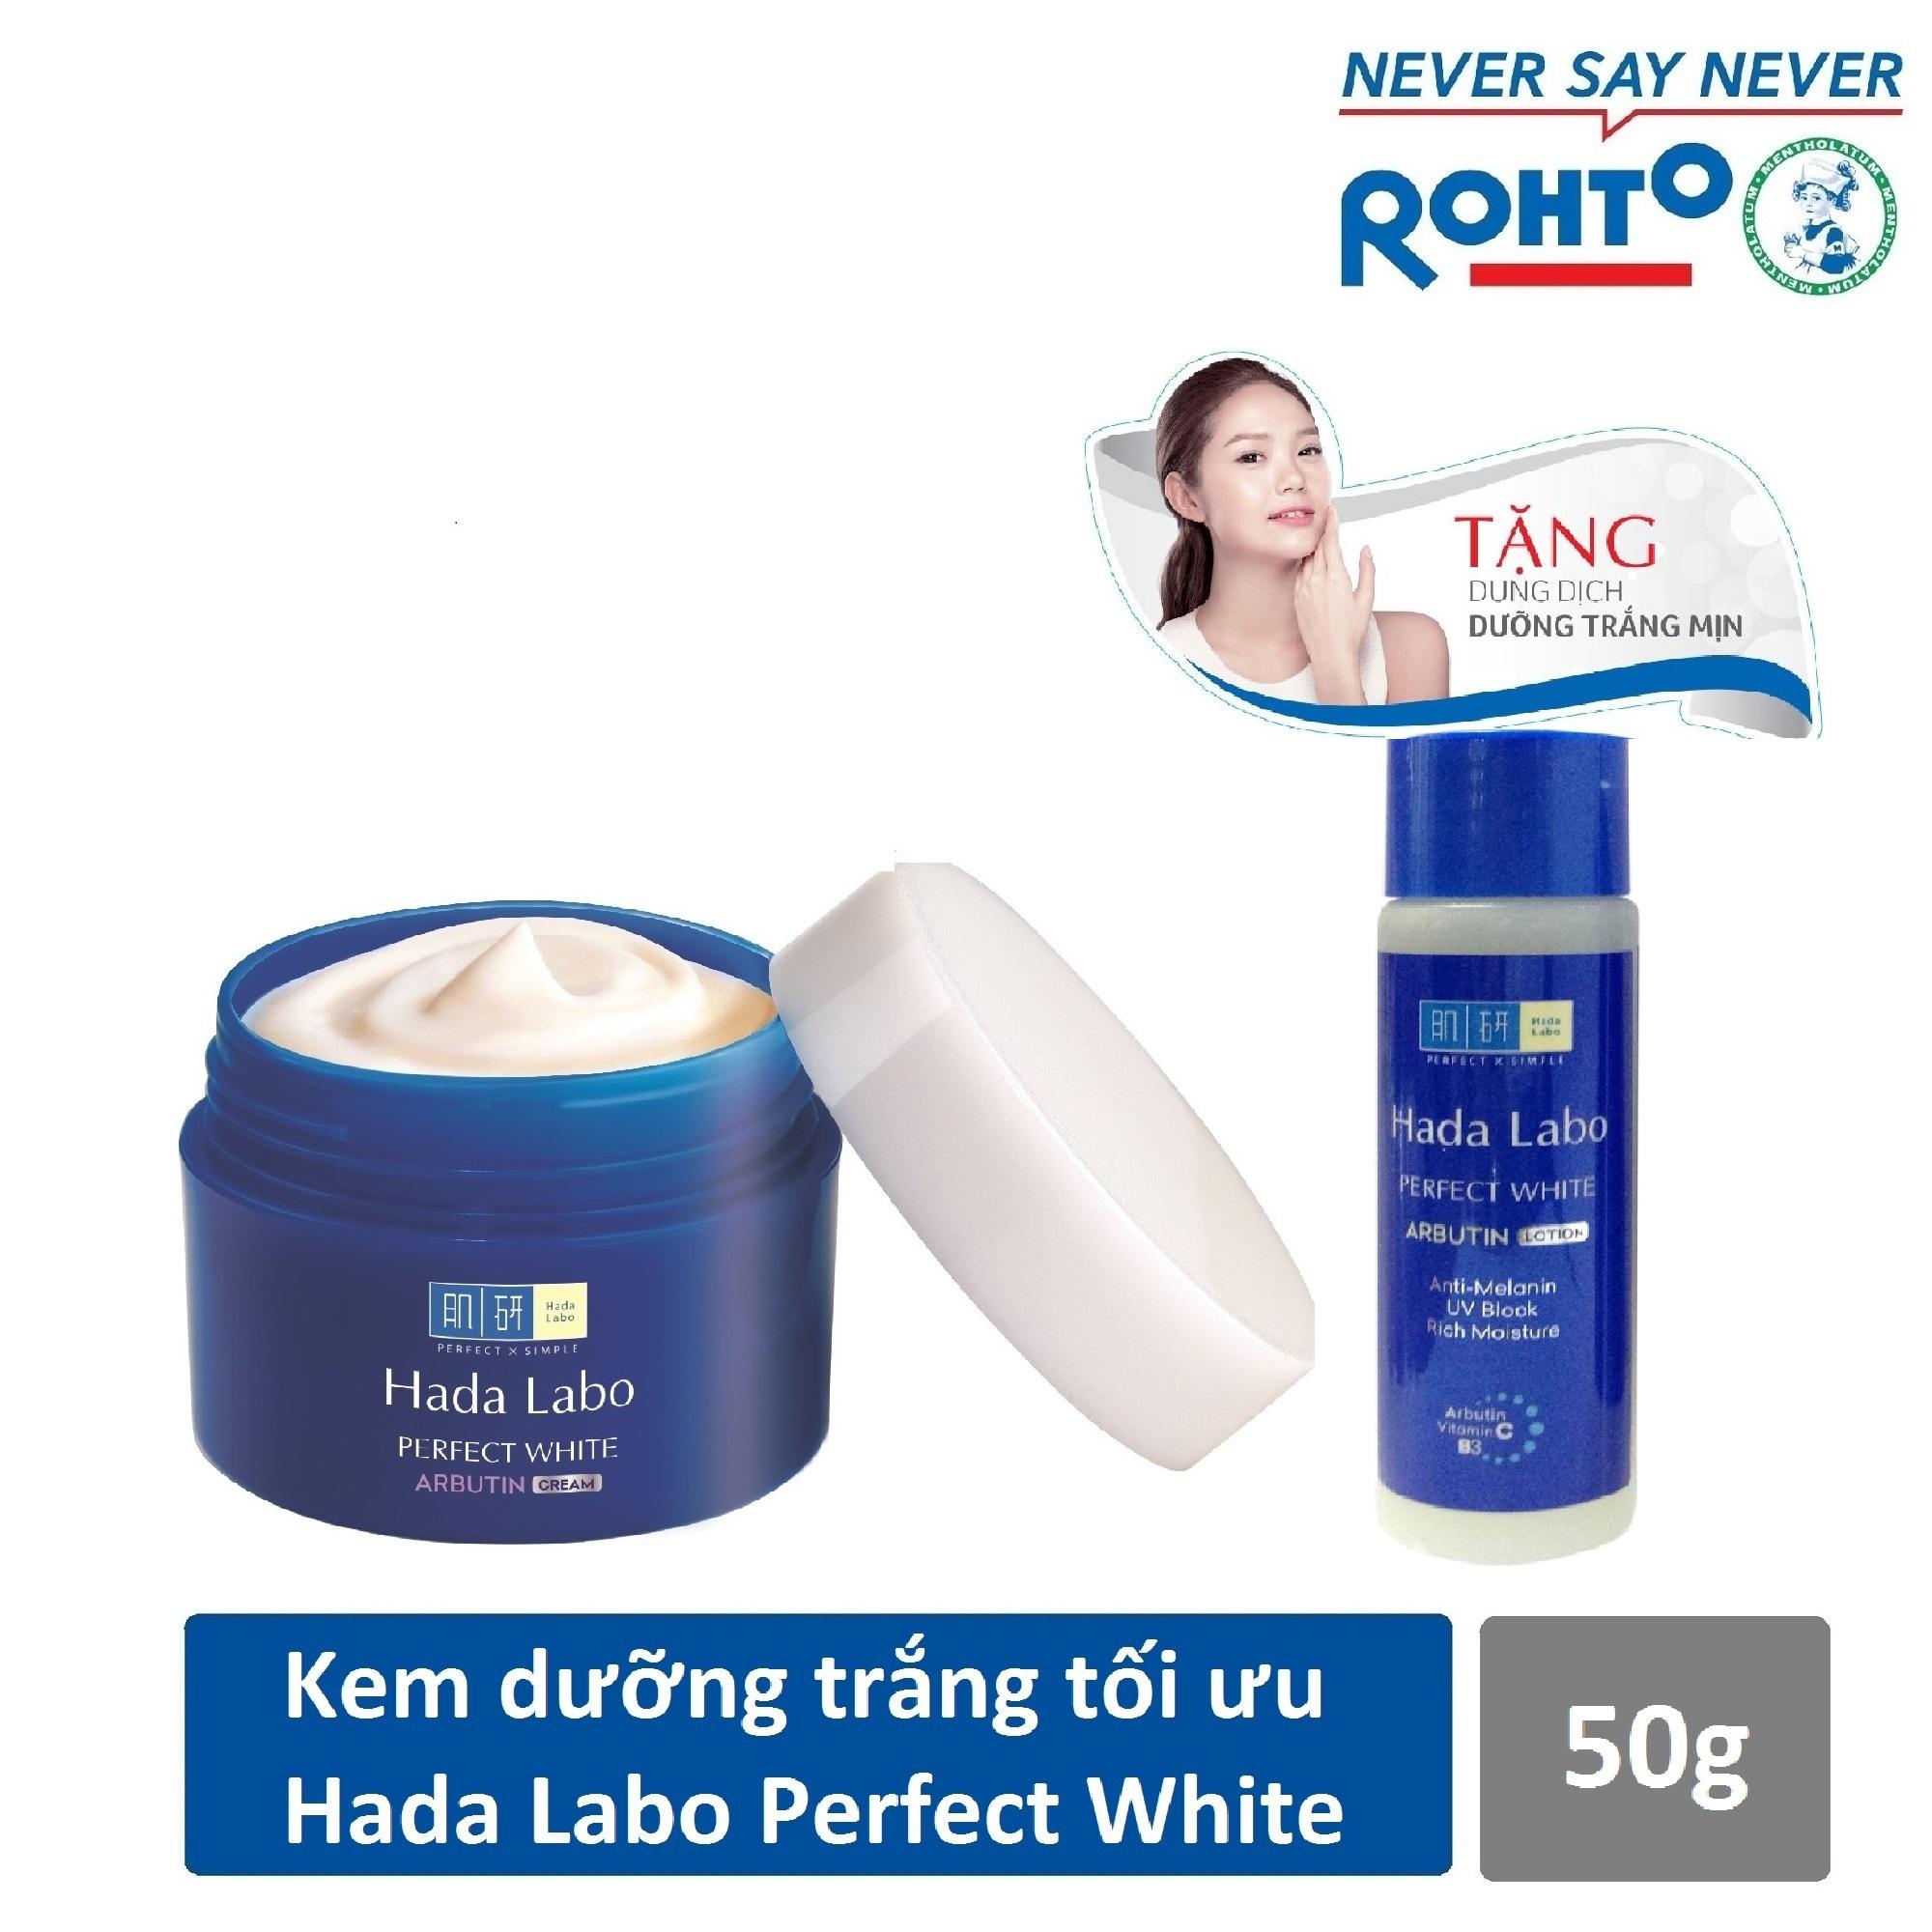 Kem dưỡng trắng tối ưu Hada Labo Perfect White Cream 50g + Tặng Dung dịch Hada Labo 40ml